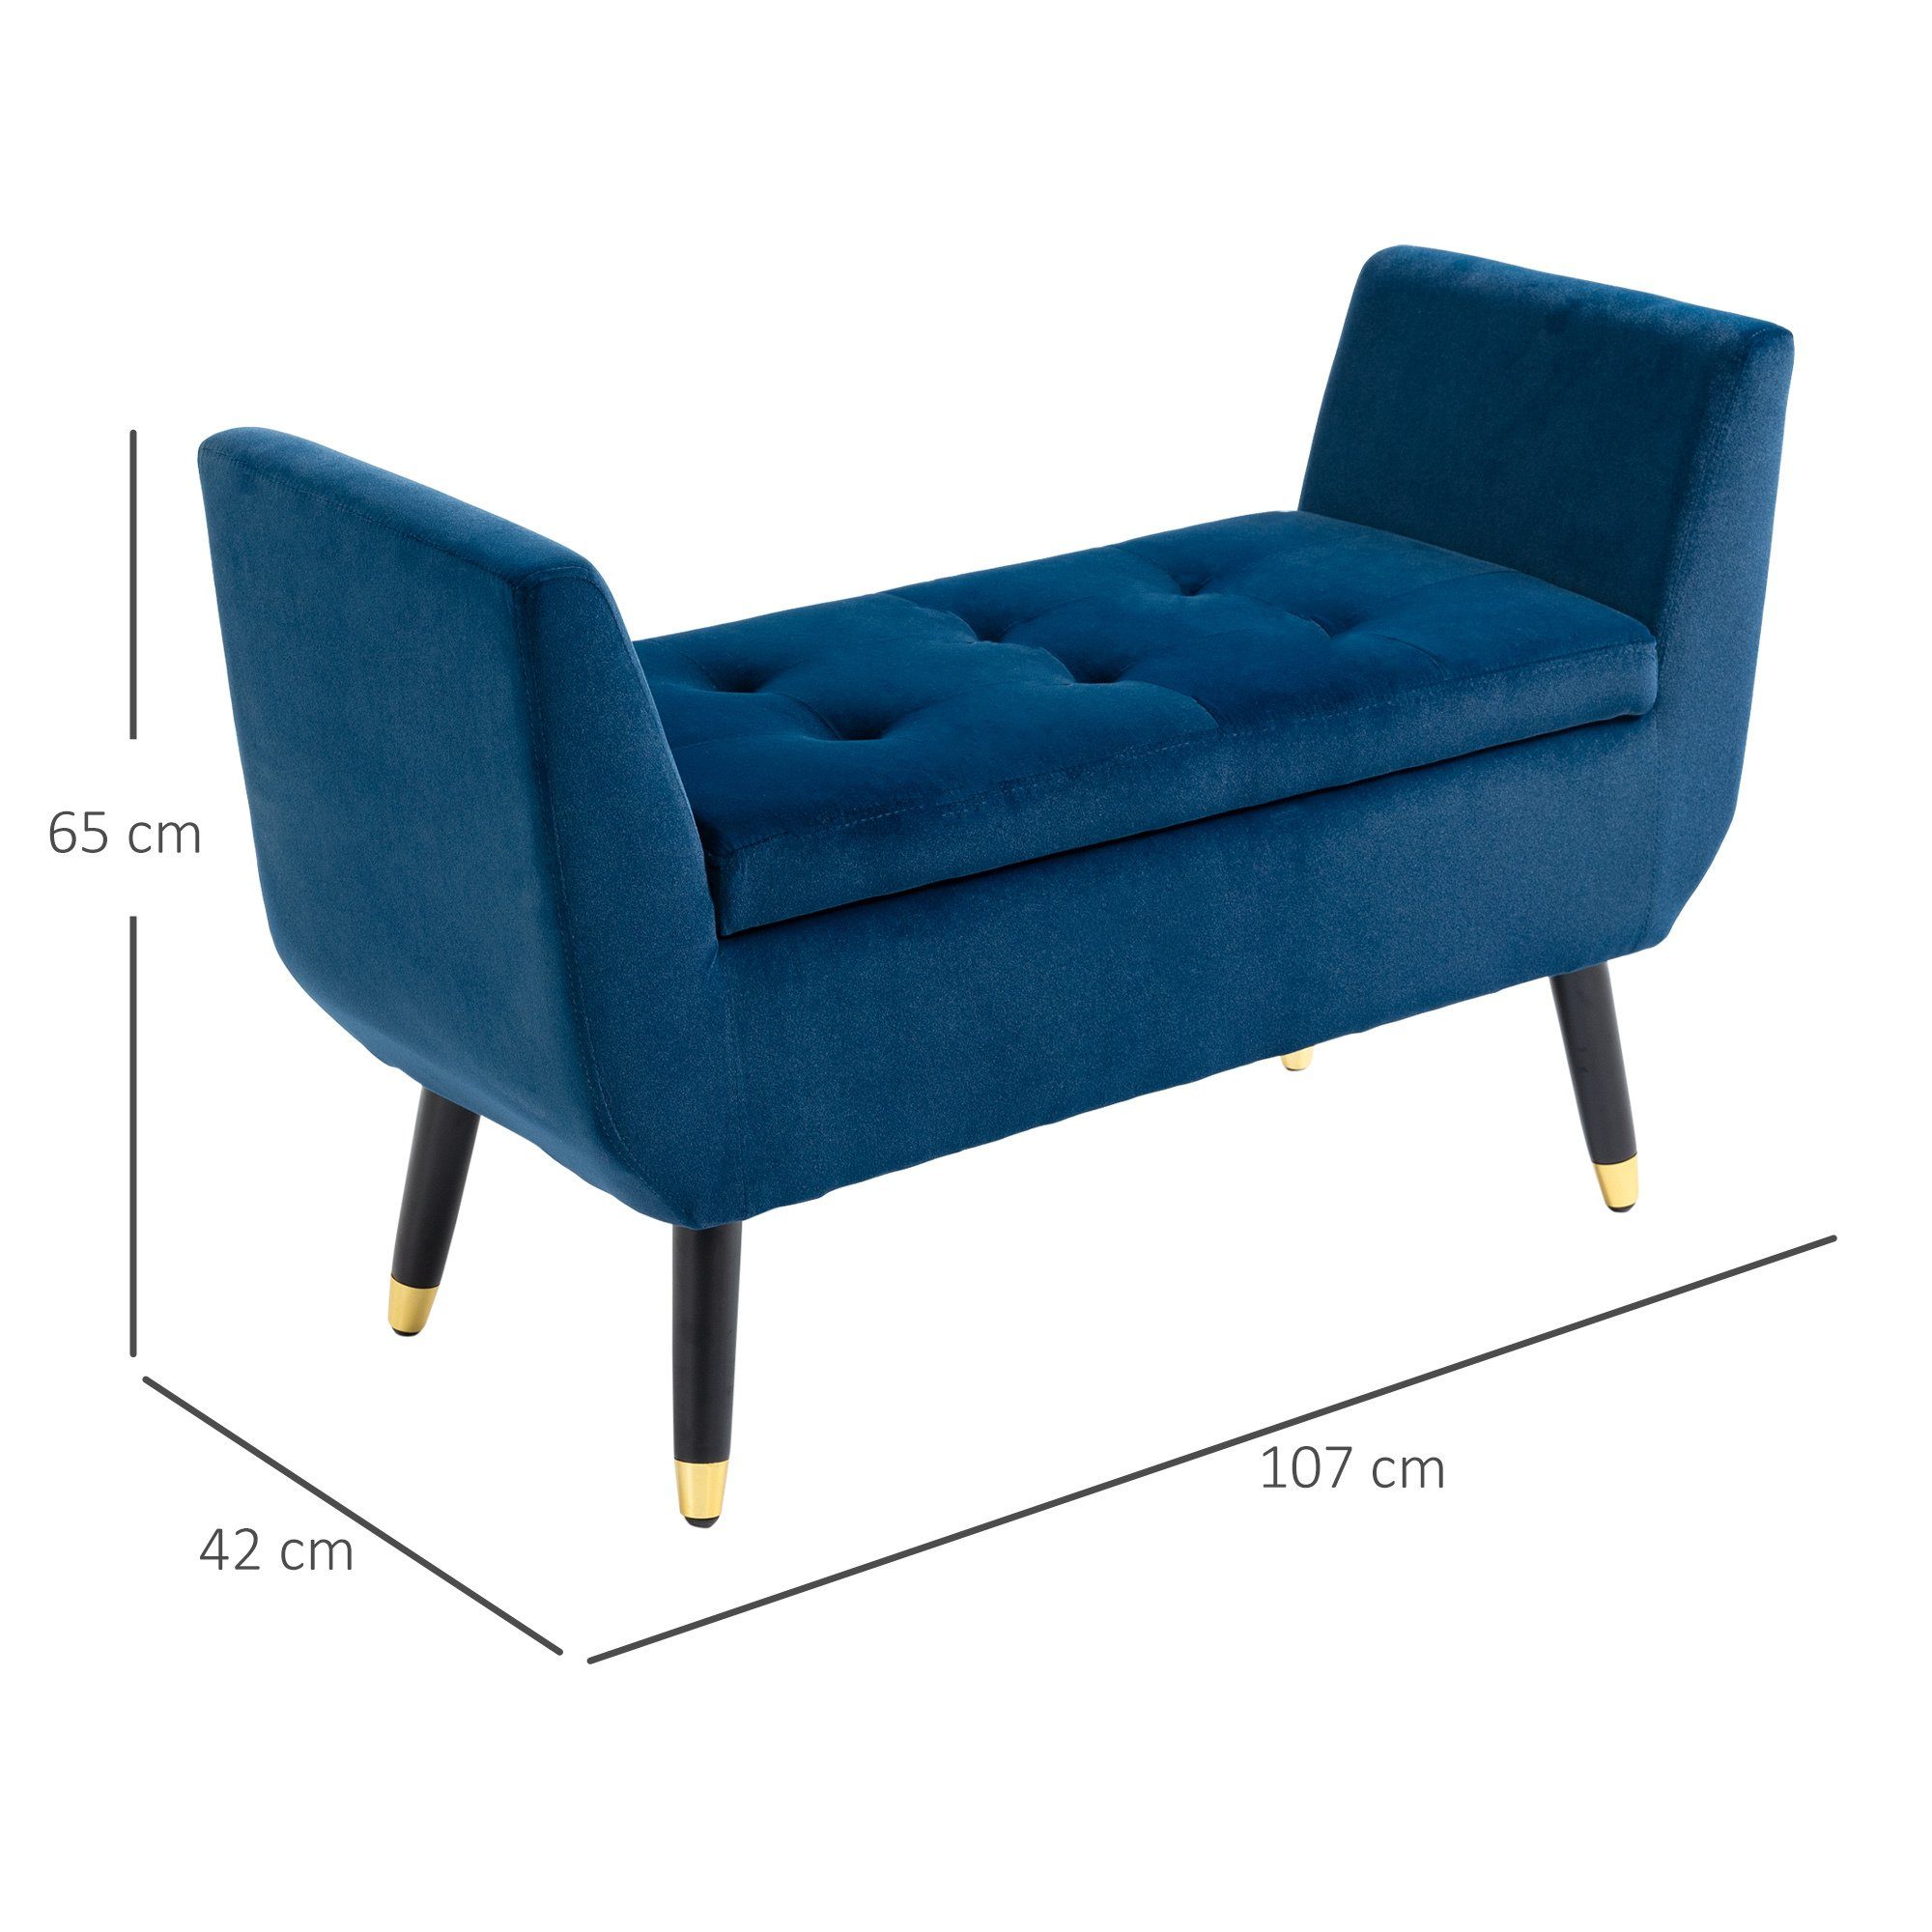 Sitzbank blau mit Stauraum Sitzbank blau | HOMCOM